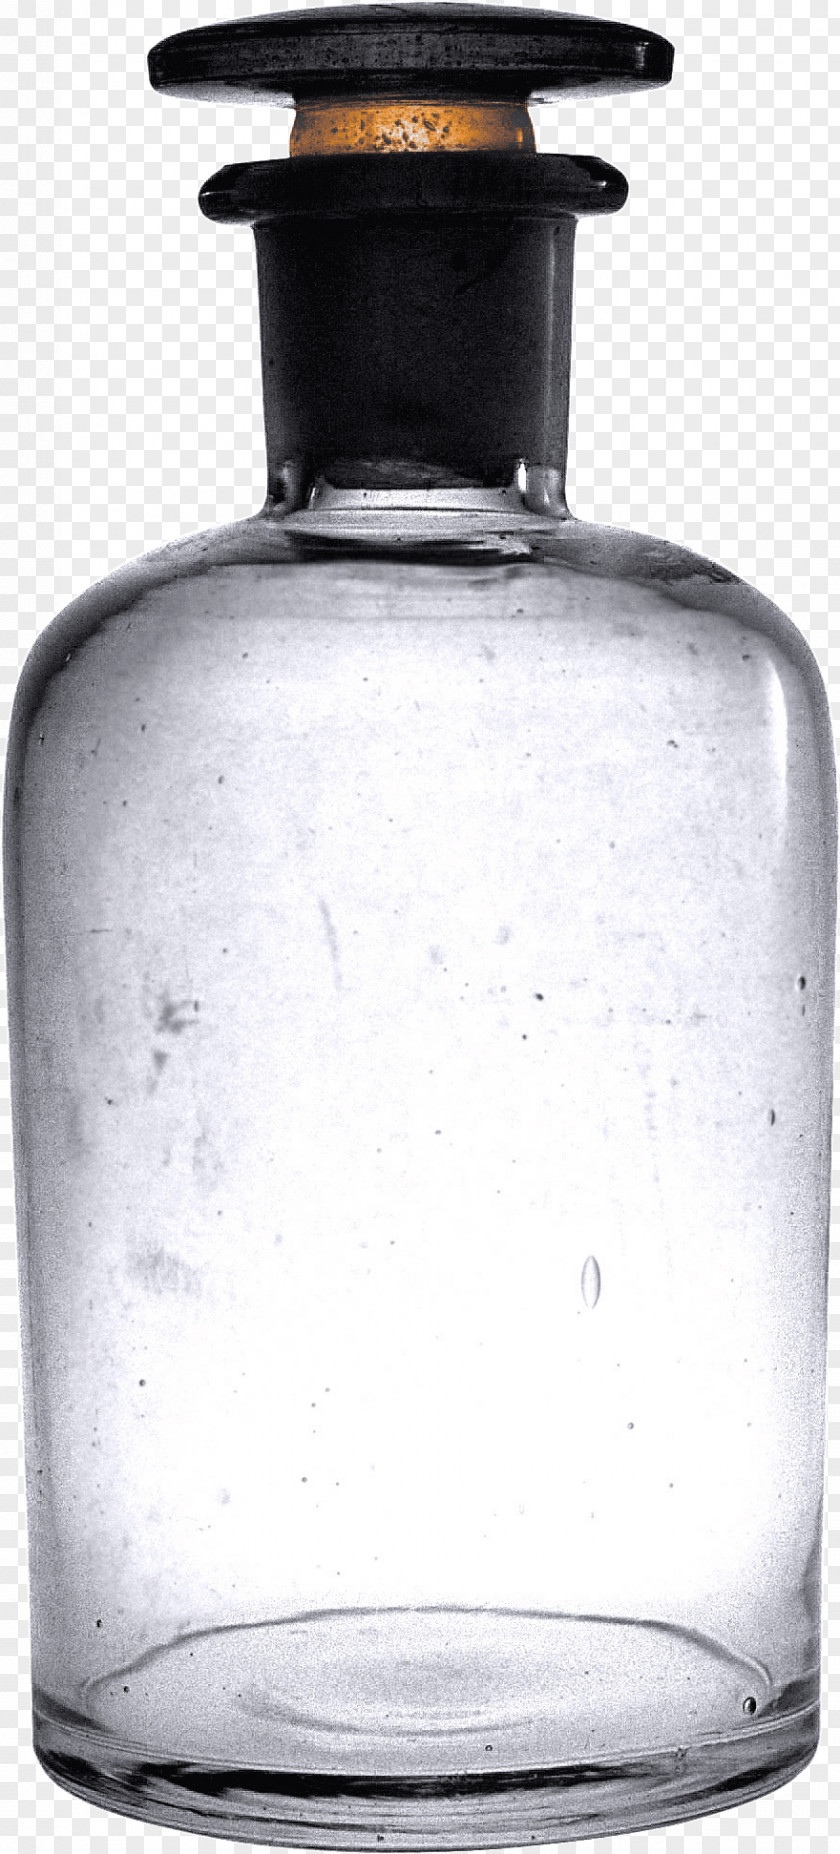 Vintage Empty Bottle PNG Bottle, white and black glass bottle illustration clipart PNG